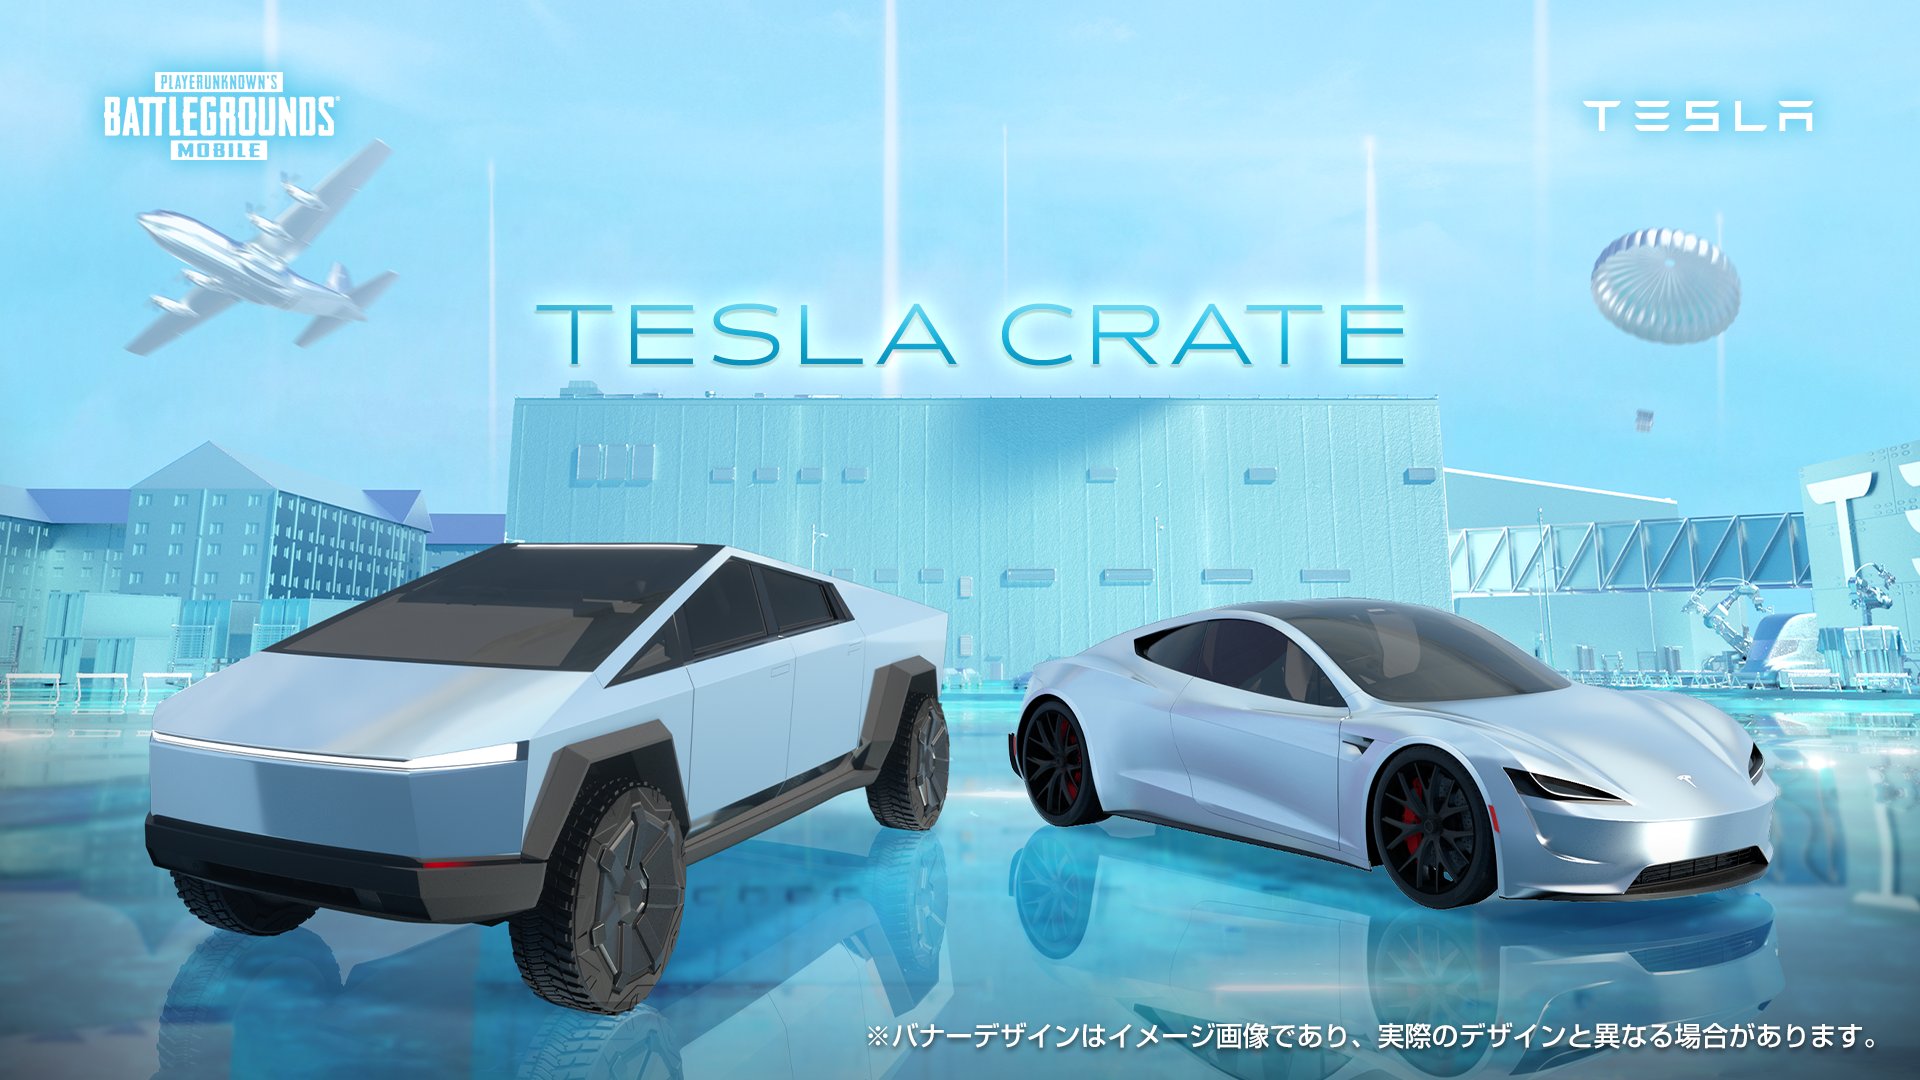 Pubg Mobile Japan Pubgモバイル X テスラ コラボ車両 テスラの自動車 Cybertruck と Roadster が Teslaクレート に新登場 それぞれの車種で3カラーずつ 計6種がラインナップされています テスラに乗ってドン勝を目指そう Tesla